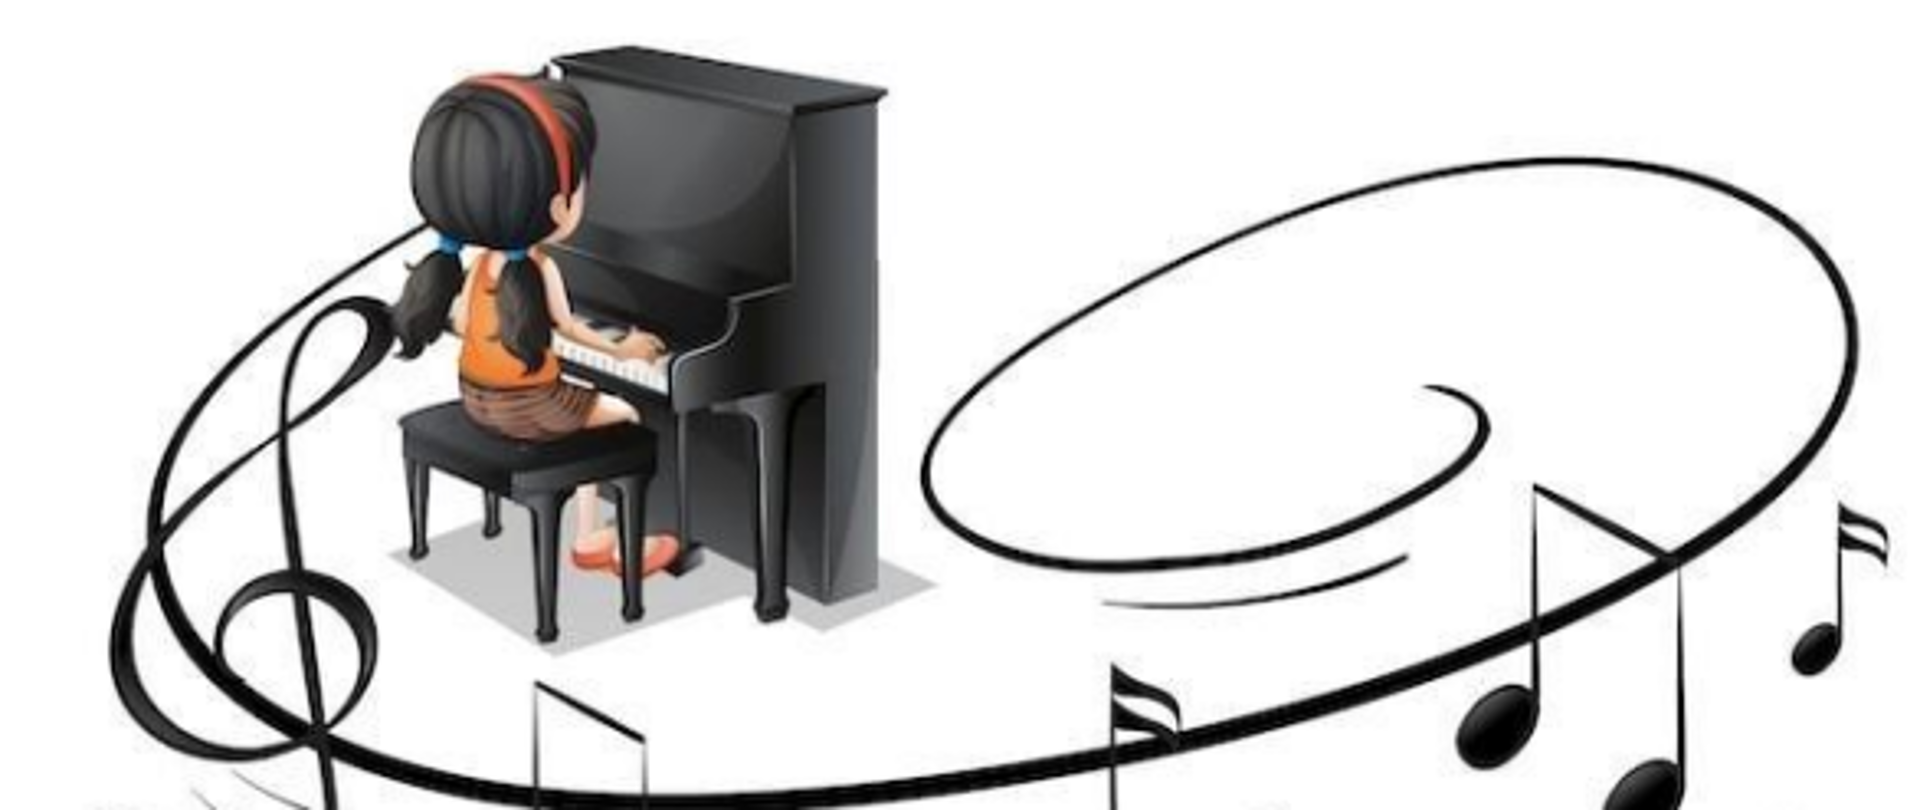 W centralnej części plakatu znajdują się informacje na temat szczegółów koncertu. W dolnej części plakatu umieszczona została grafika przedstawiająca dziewczynkę grającą na pianinie. Dźwięki wydobywane przez instrument zostały przedstawione graficznie jako pięciolinia z kluczem wiolinowym i nutami.